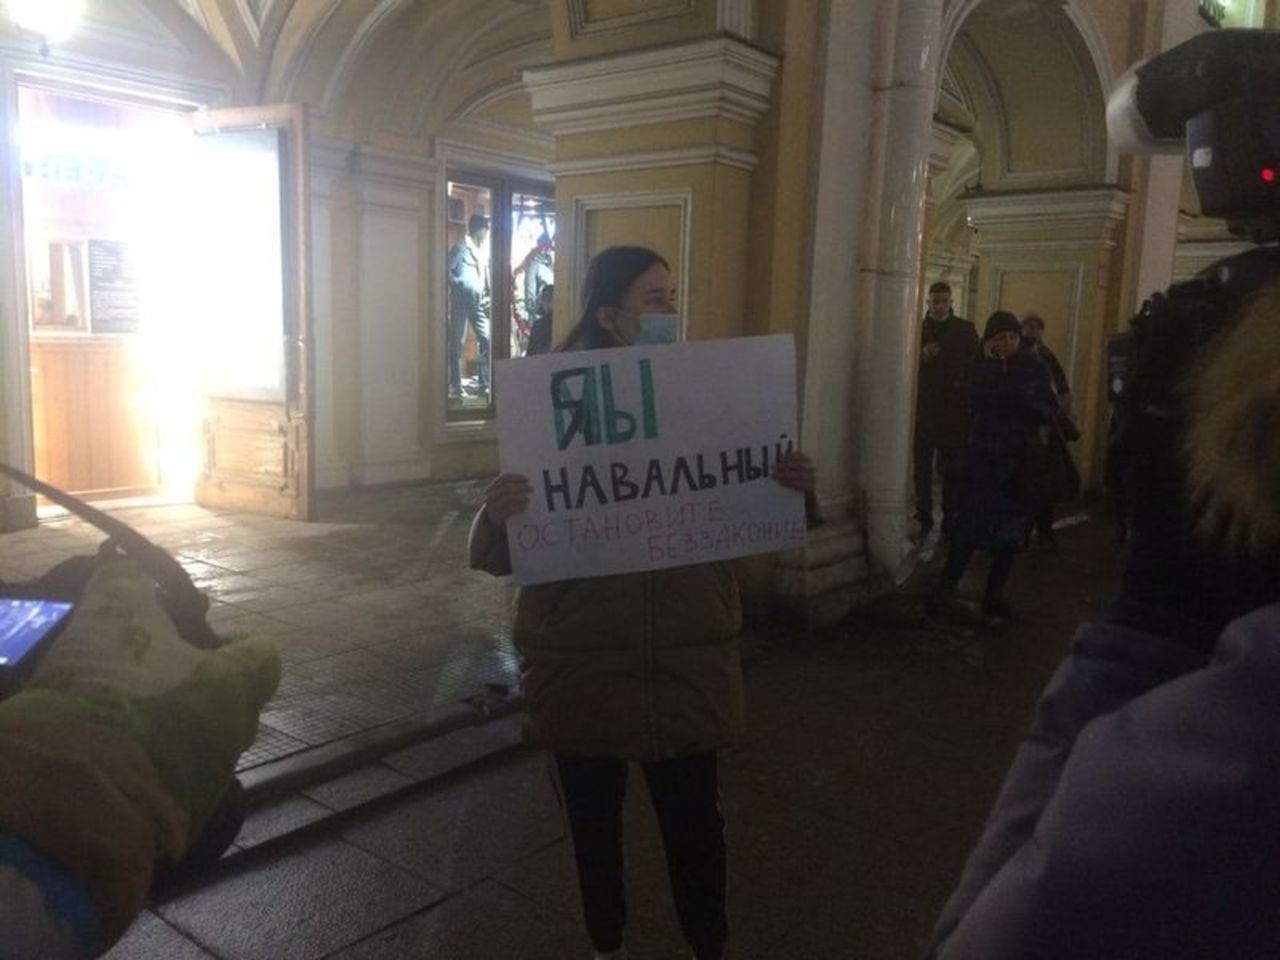 Прощание с навальным в петербурге. Штаб Навального Владивосток. Митинг в поддержку Навального Владивосток. Навальный во Владивостоке фото. Имущество Навального.